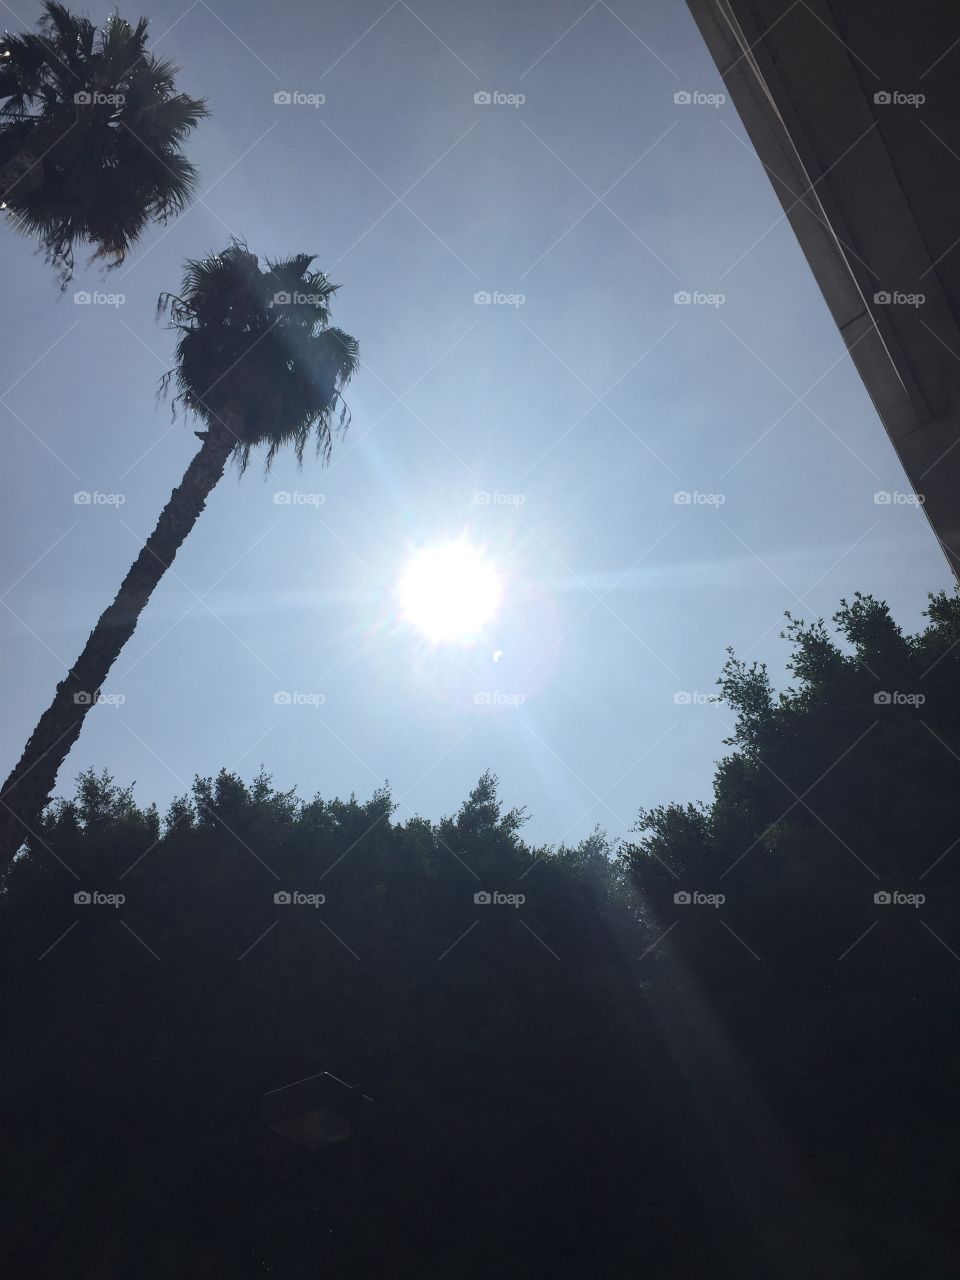 Sun Eclipsed in LA Land